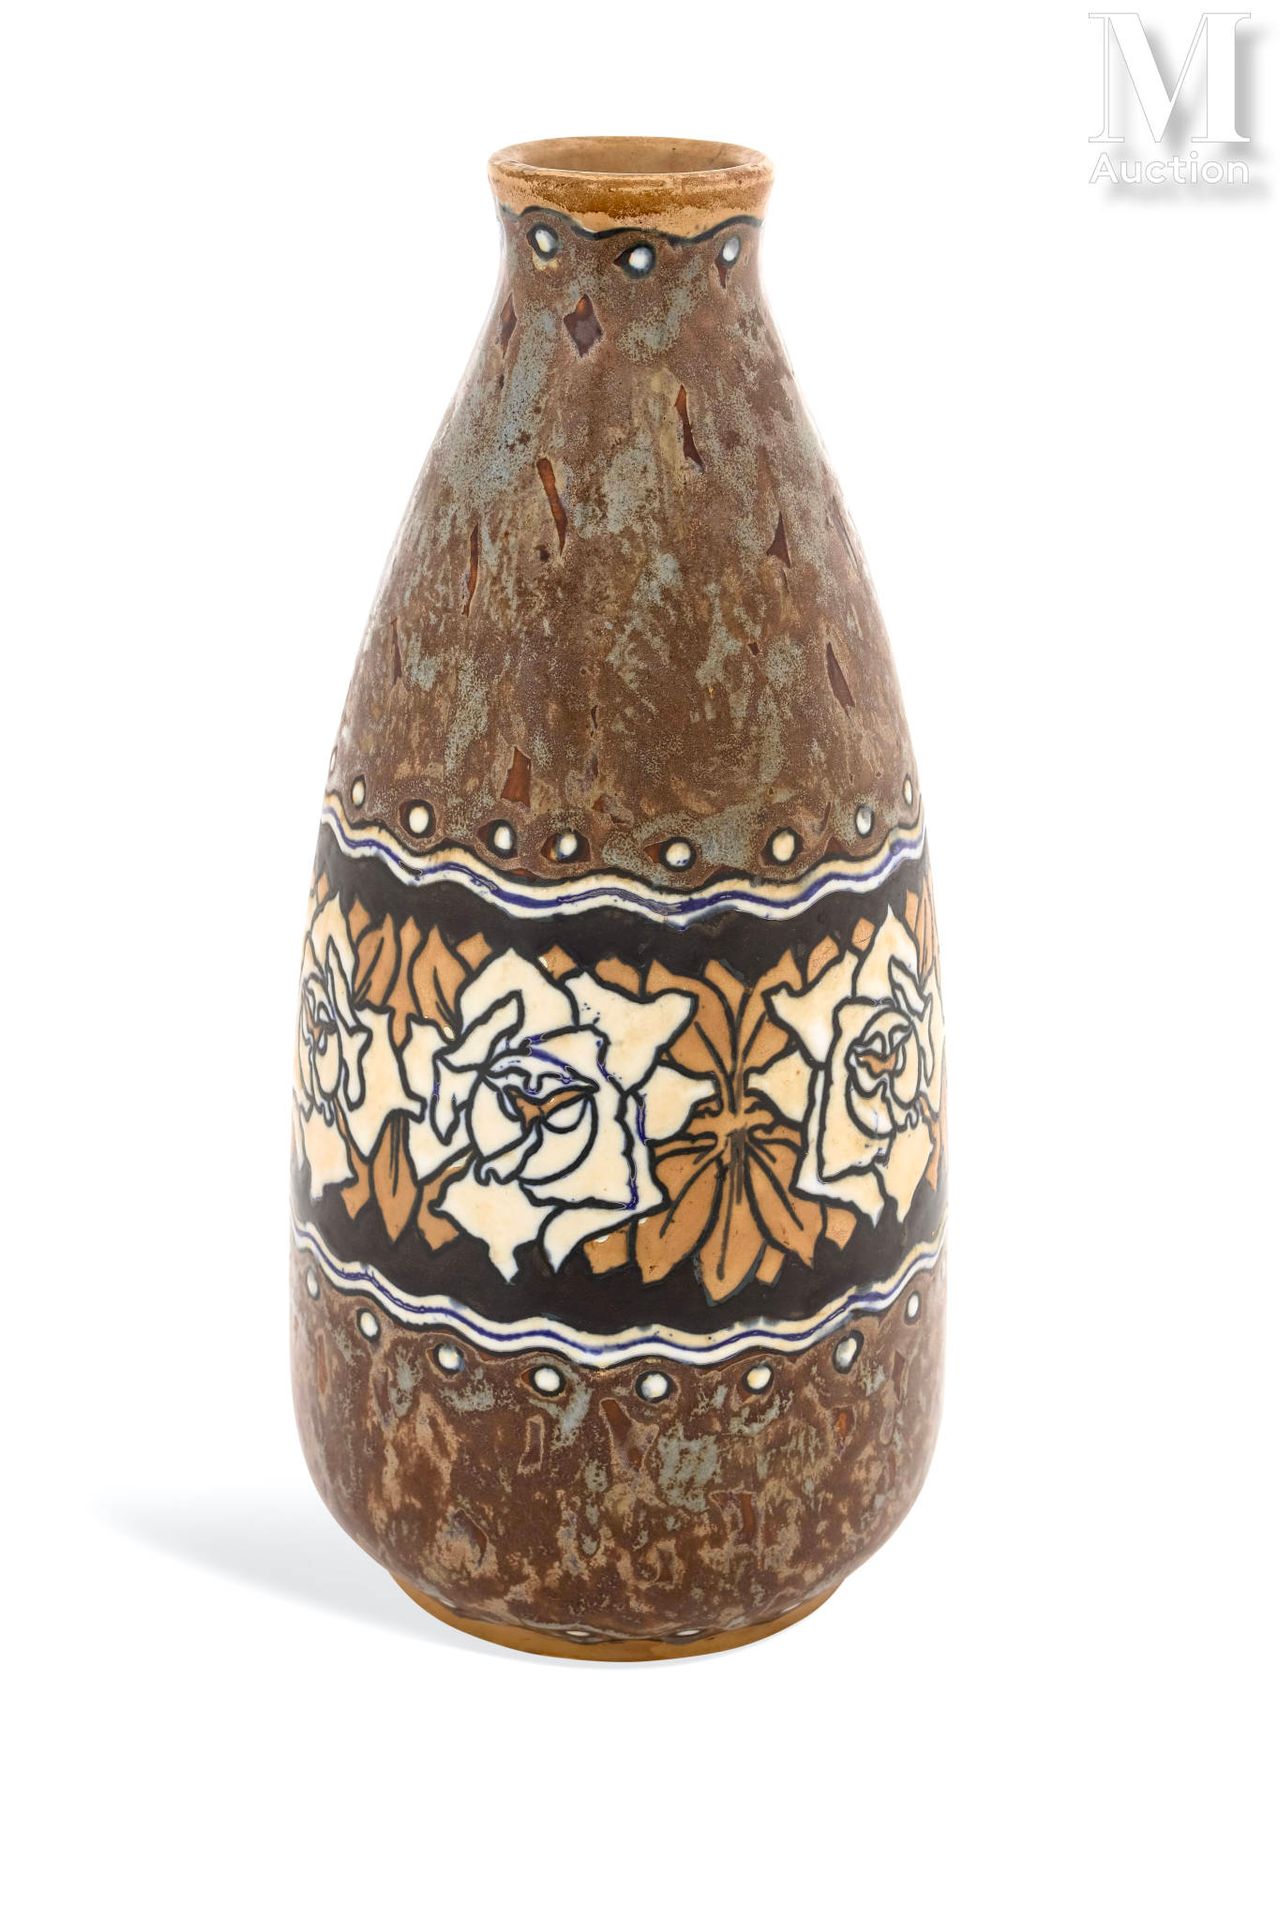 KERAMIS Vase
en grés à décor polychrome de fleurs sur fond brun 
XXème siècle
Ma&hellip;